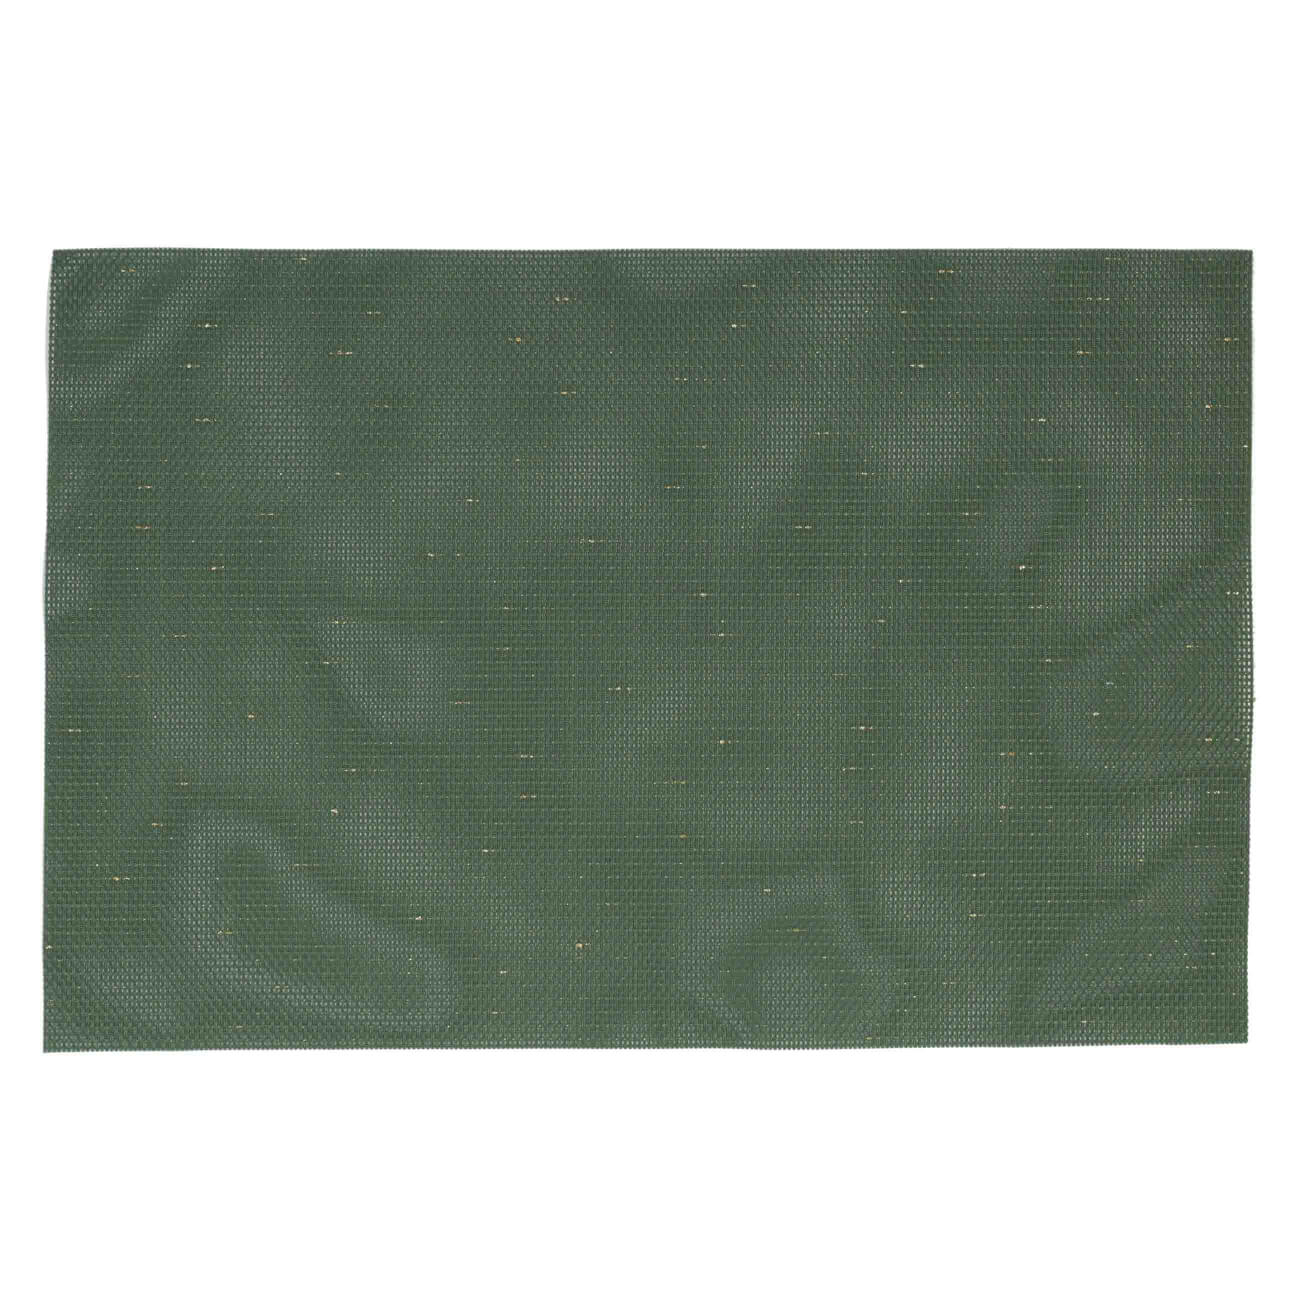 Салфетка под приборы, 30х45 см, ПВХ/полиэстер, прямоугольная, зеленая, Solid изображение № 1